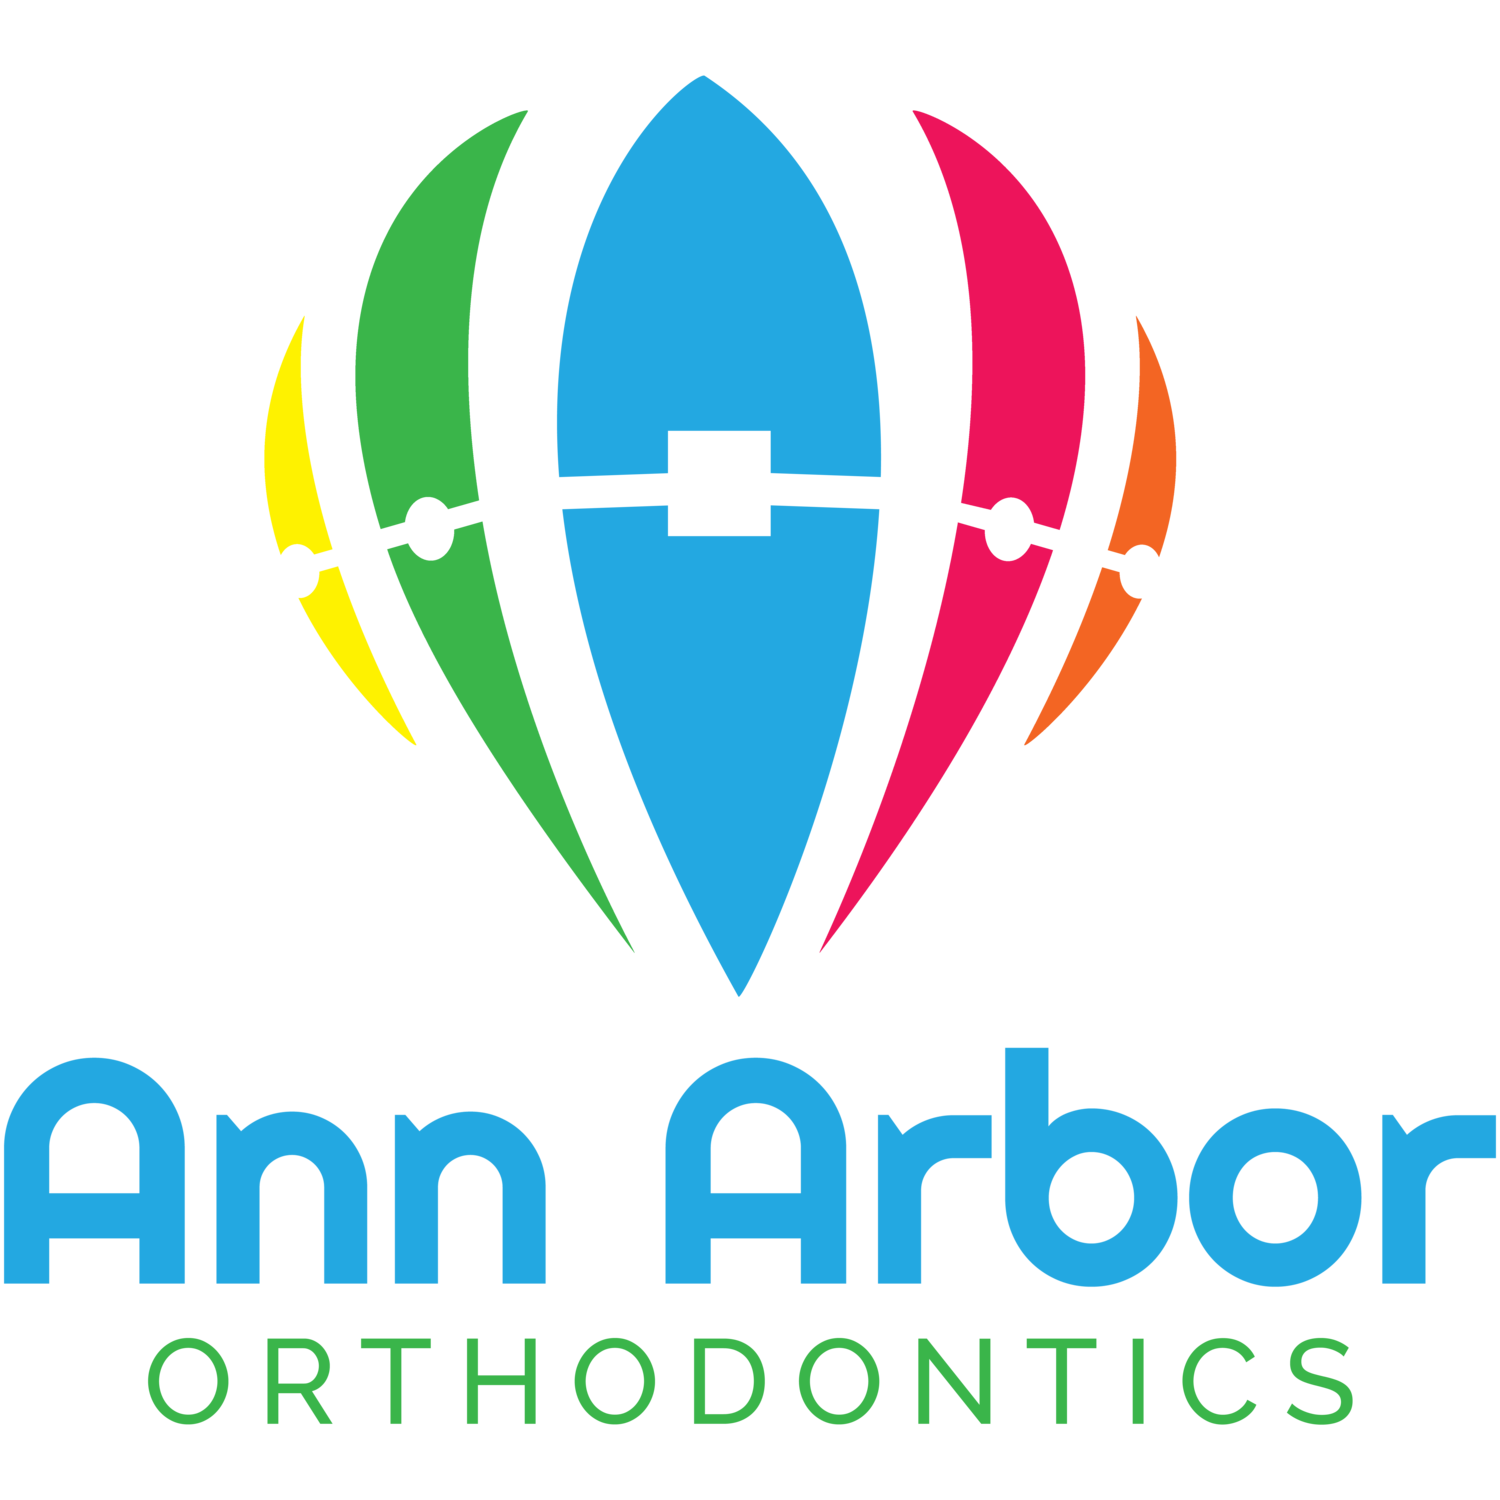 Ann Arbor Orthodontics